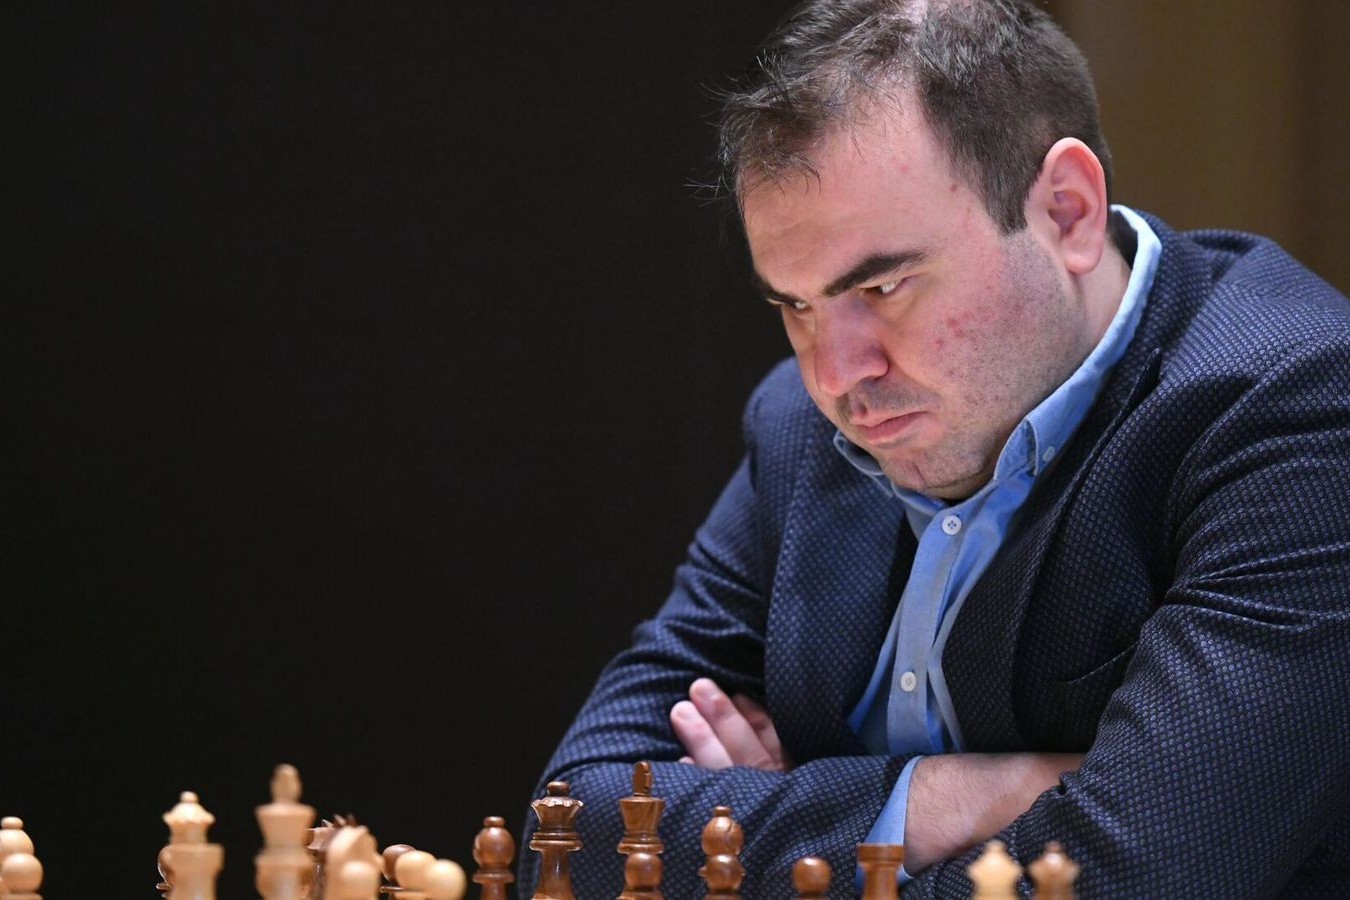 Мамедъяров начал год на 26-м месте в рейтинге